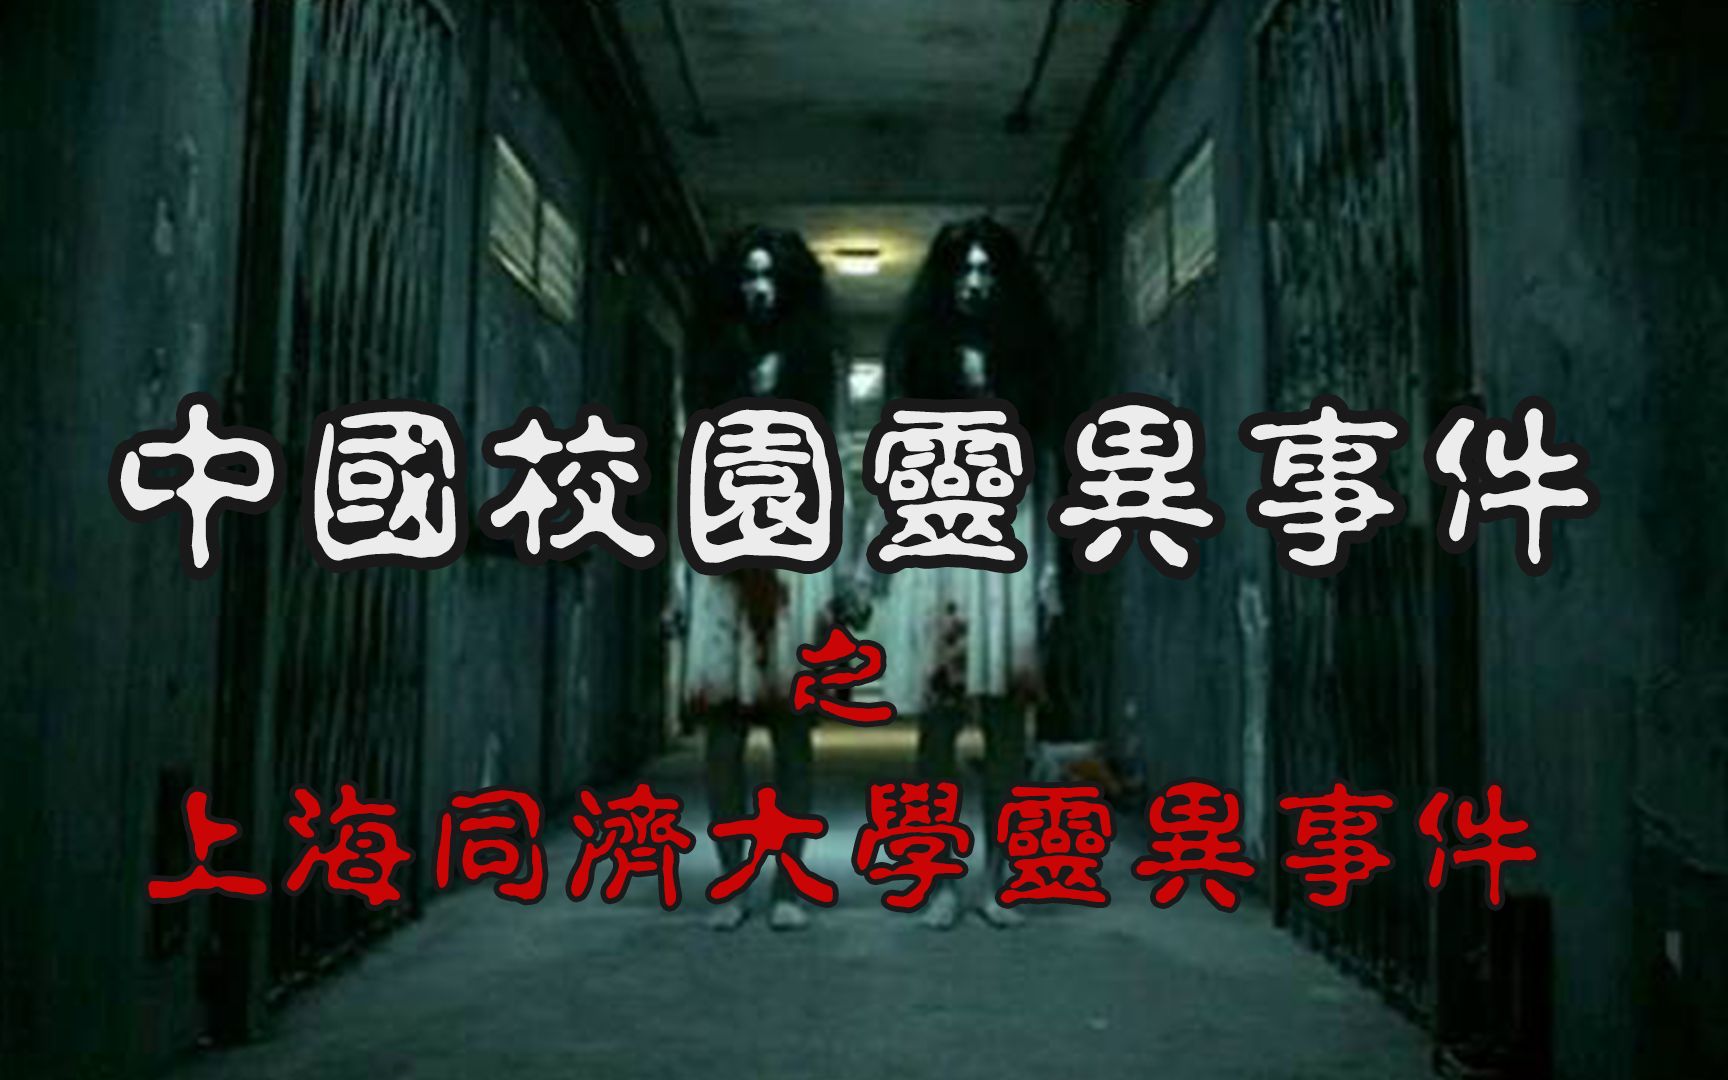 中国灵异校园系列慎得慌惊动得道高僧镇压上海同济大学灵异事件